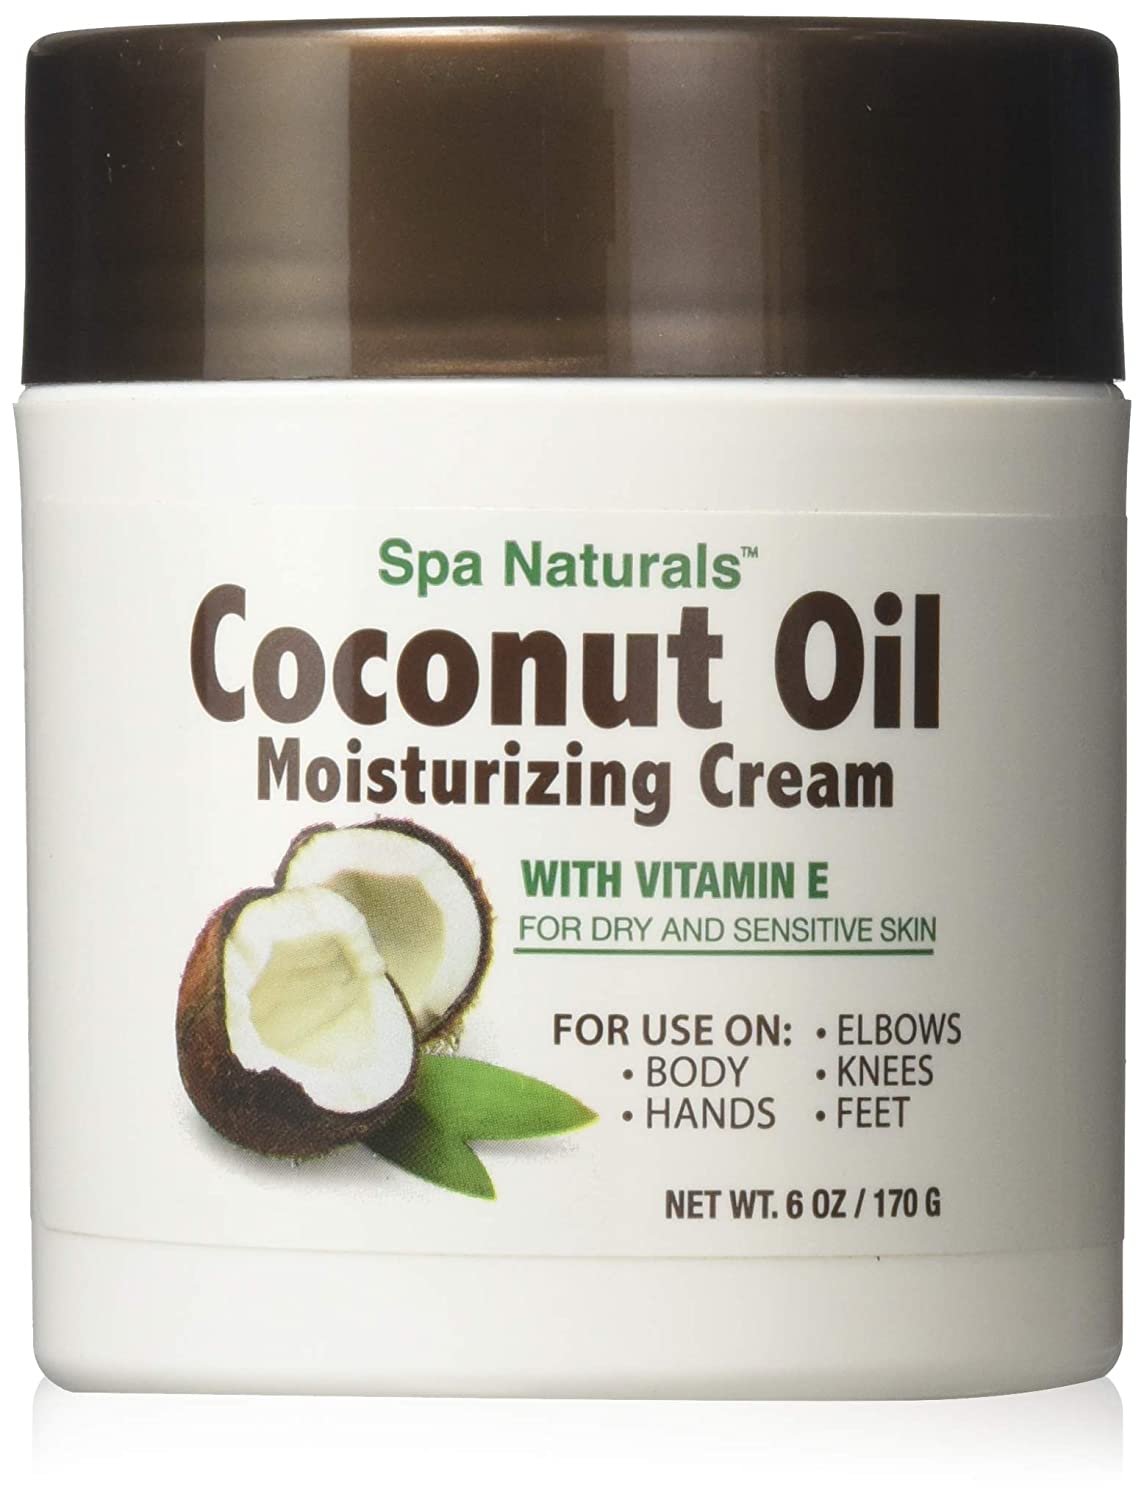 Spa Naturals Coconut Oil